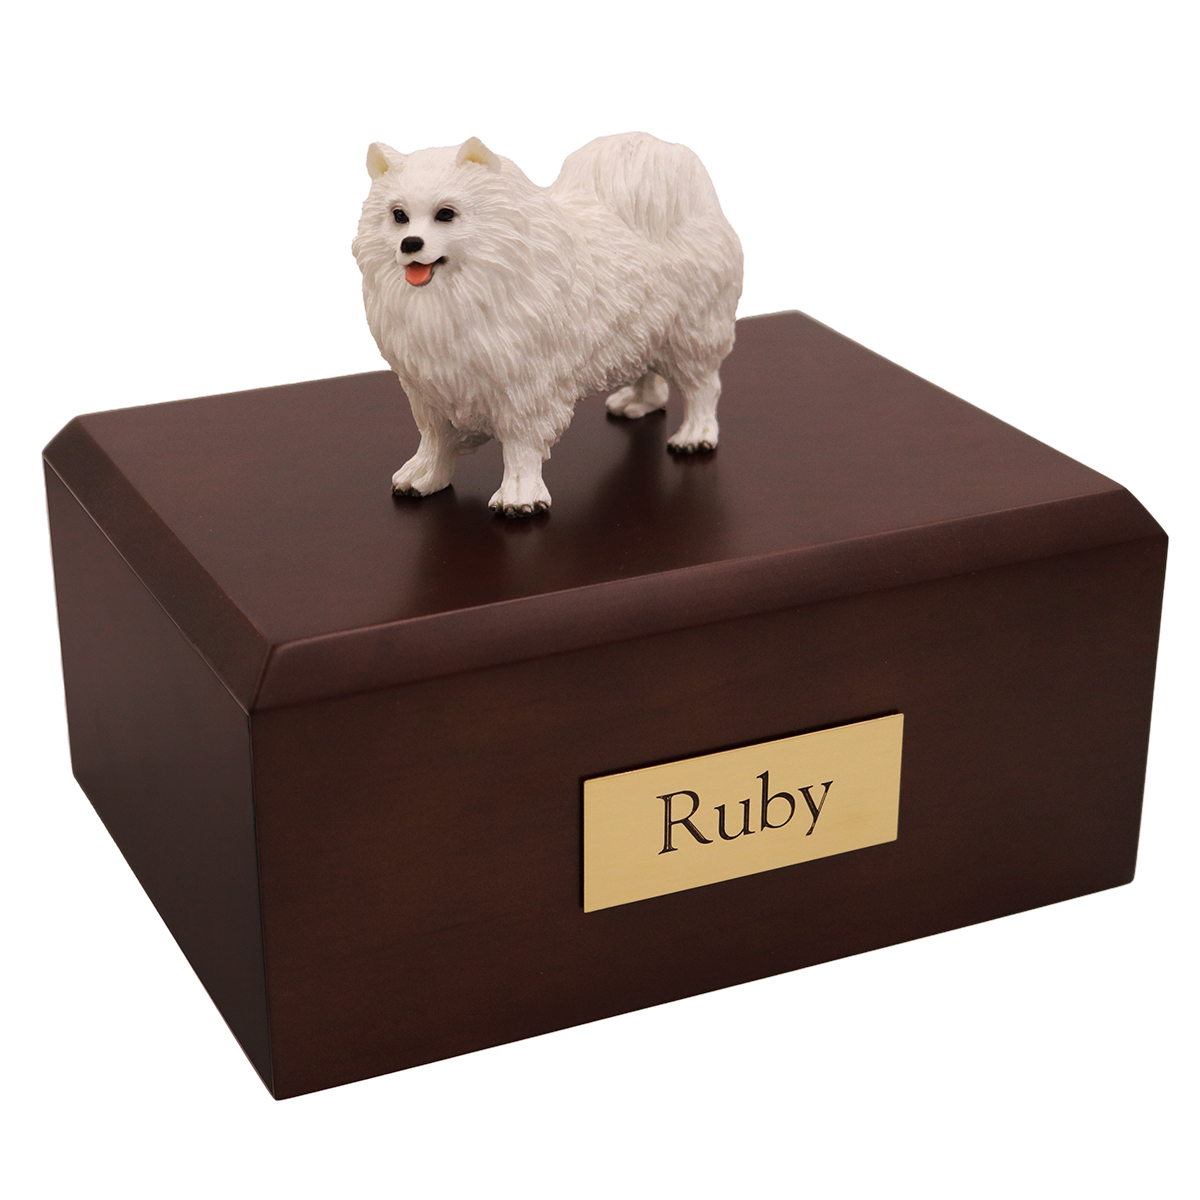 Dog, Samoyed - Figurine Urn